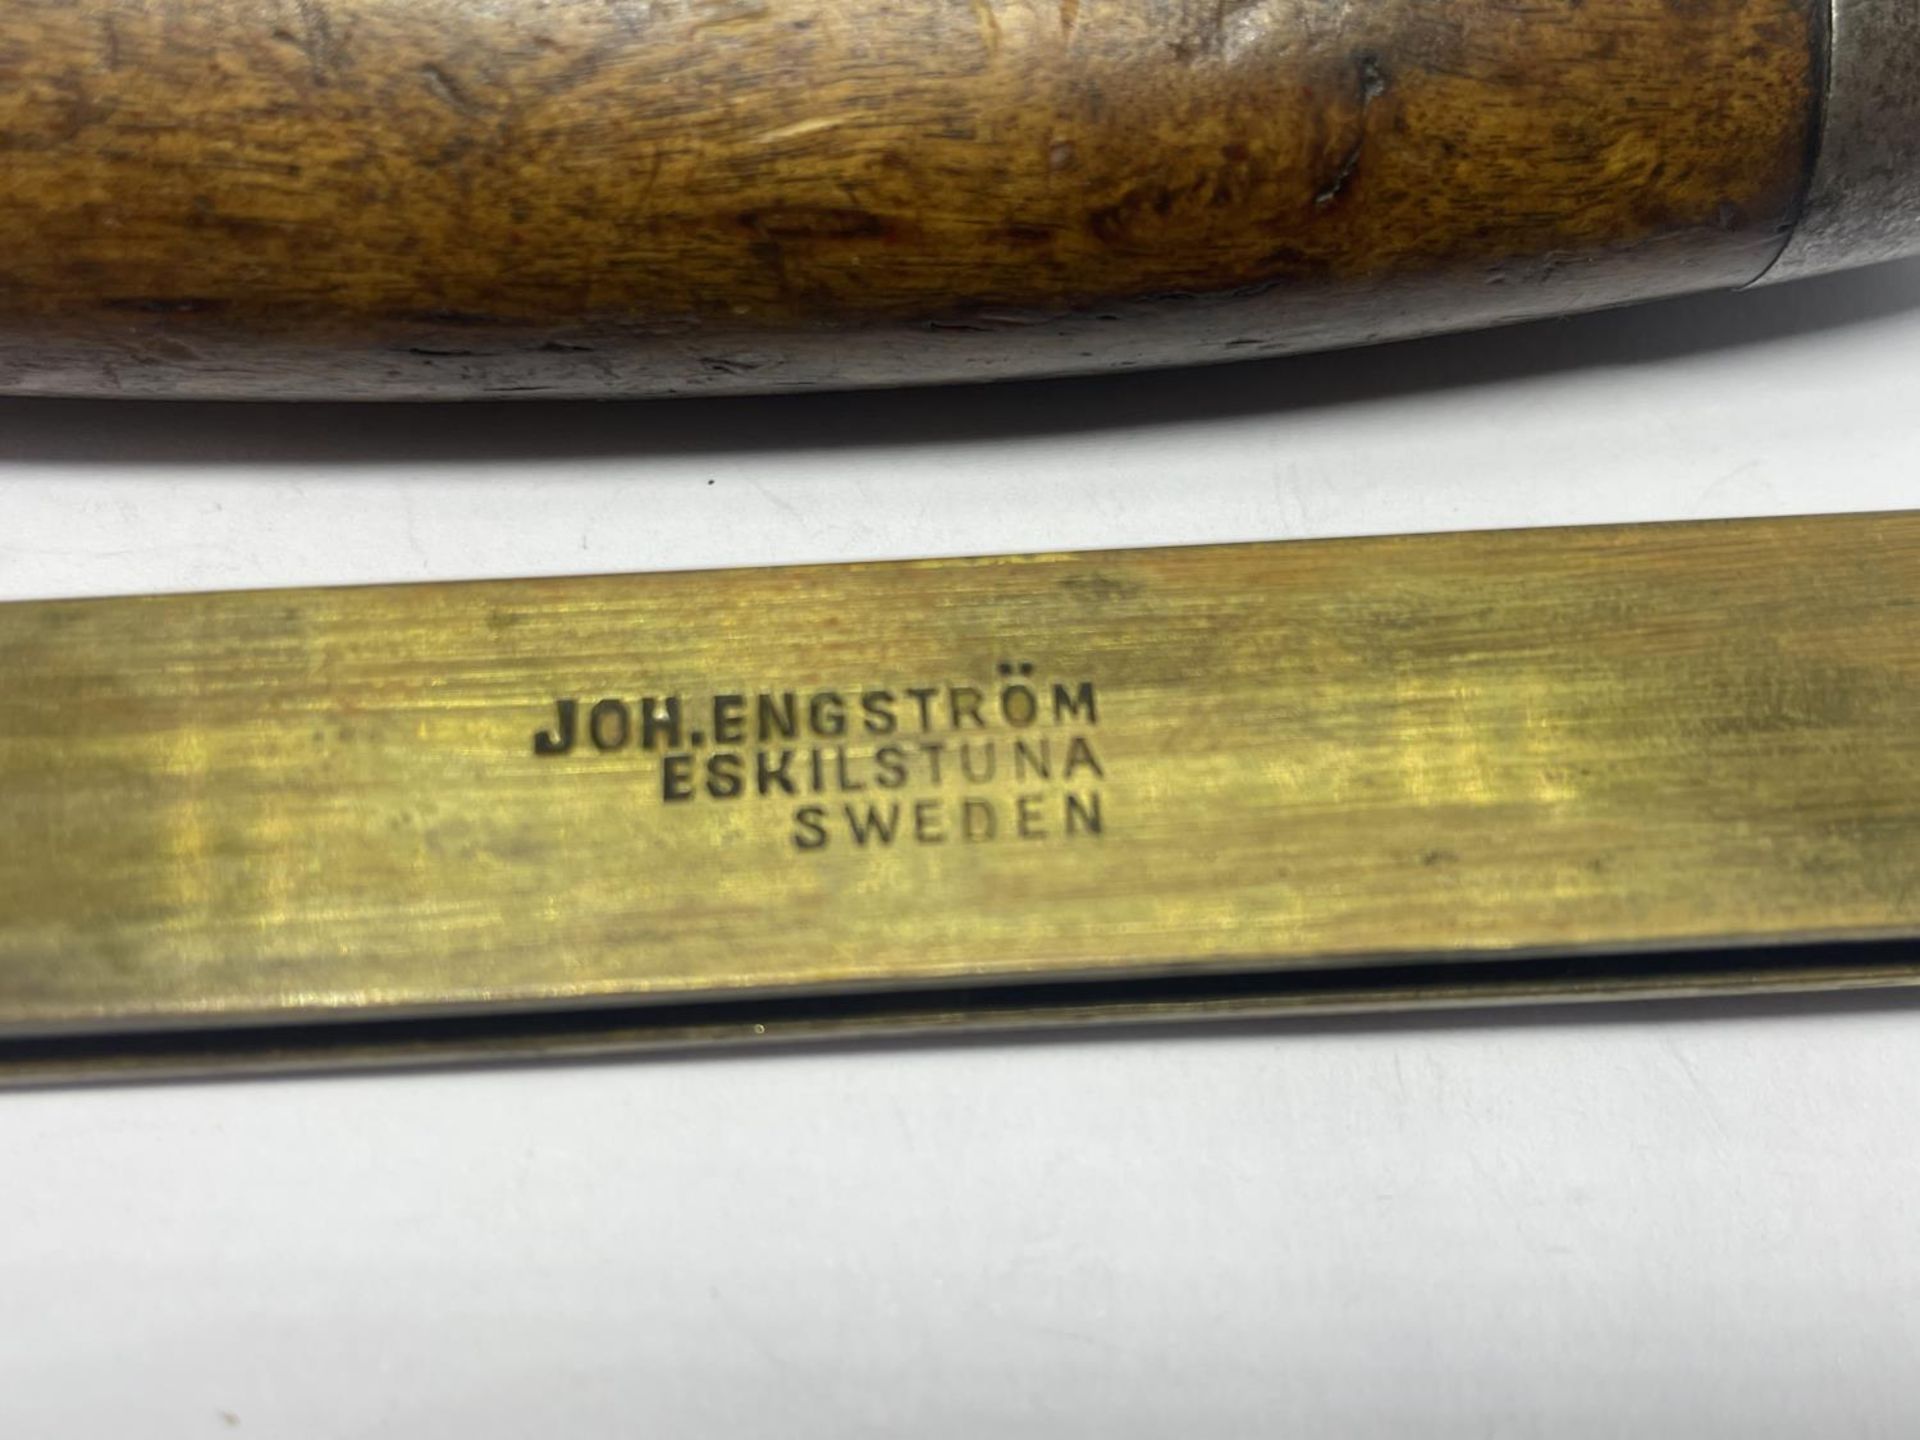 A JOH ENGSTROM ESKILSTUNA SWEDEN BARREL KNIFE - Image 2 of 6